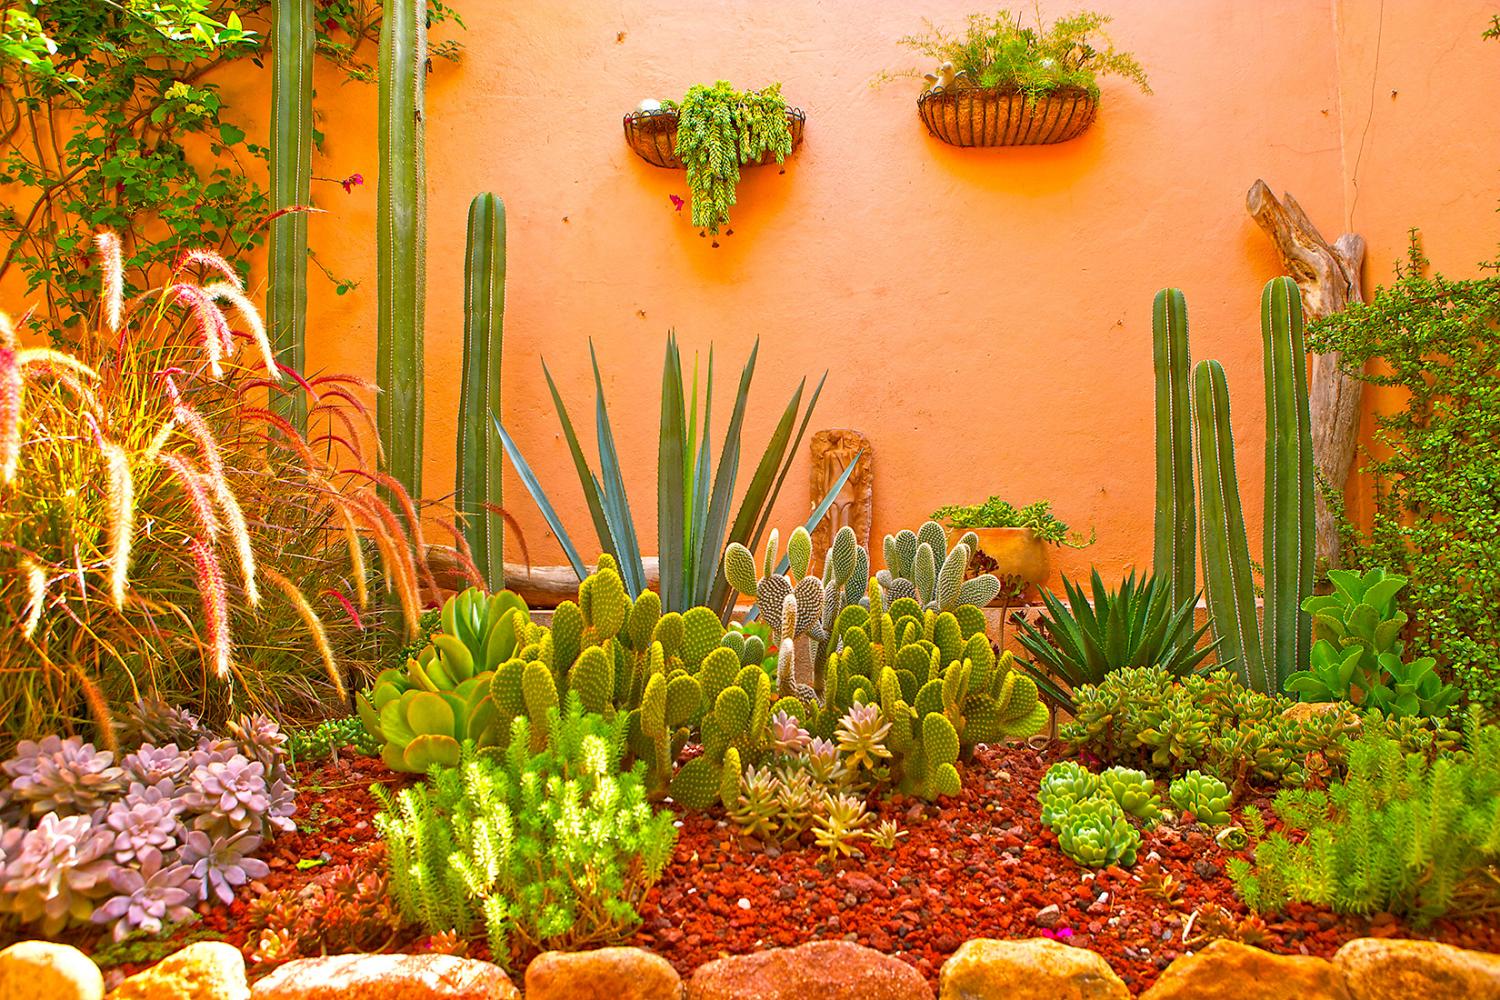 San Rafael Casa Oasis Cacti/Succulent Garden Section